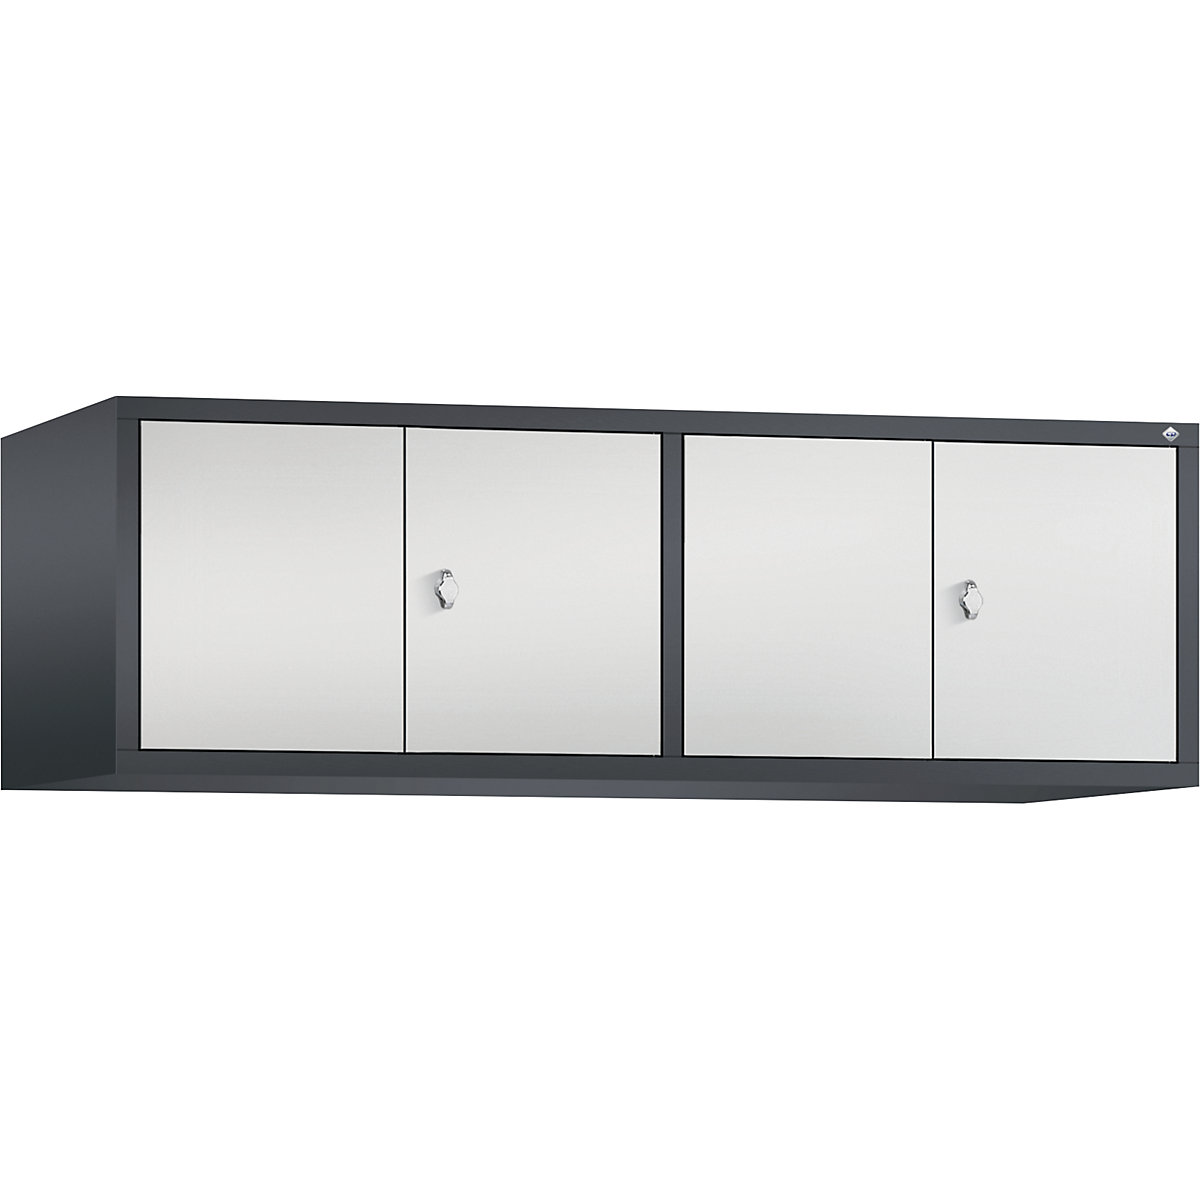 C+P – Altillo CLASSIC, puertas batientes que cierran al ras entre sí, 4 compartimentos, anchura de compartimento 400 mm, gris negruzco / gris luminoso